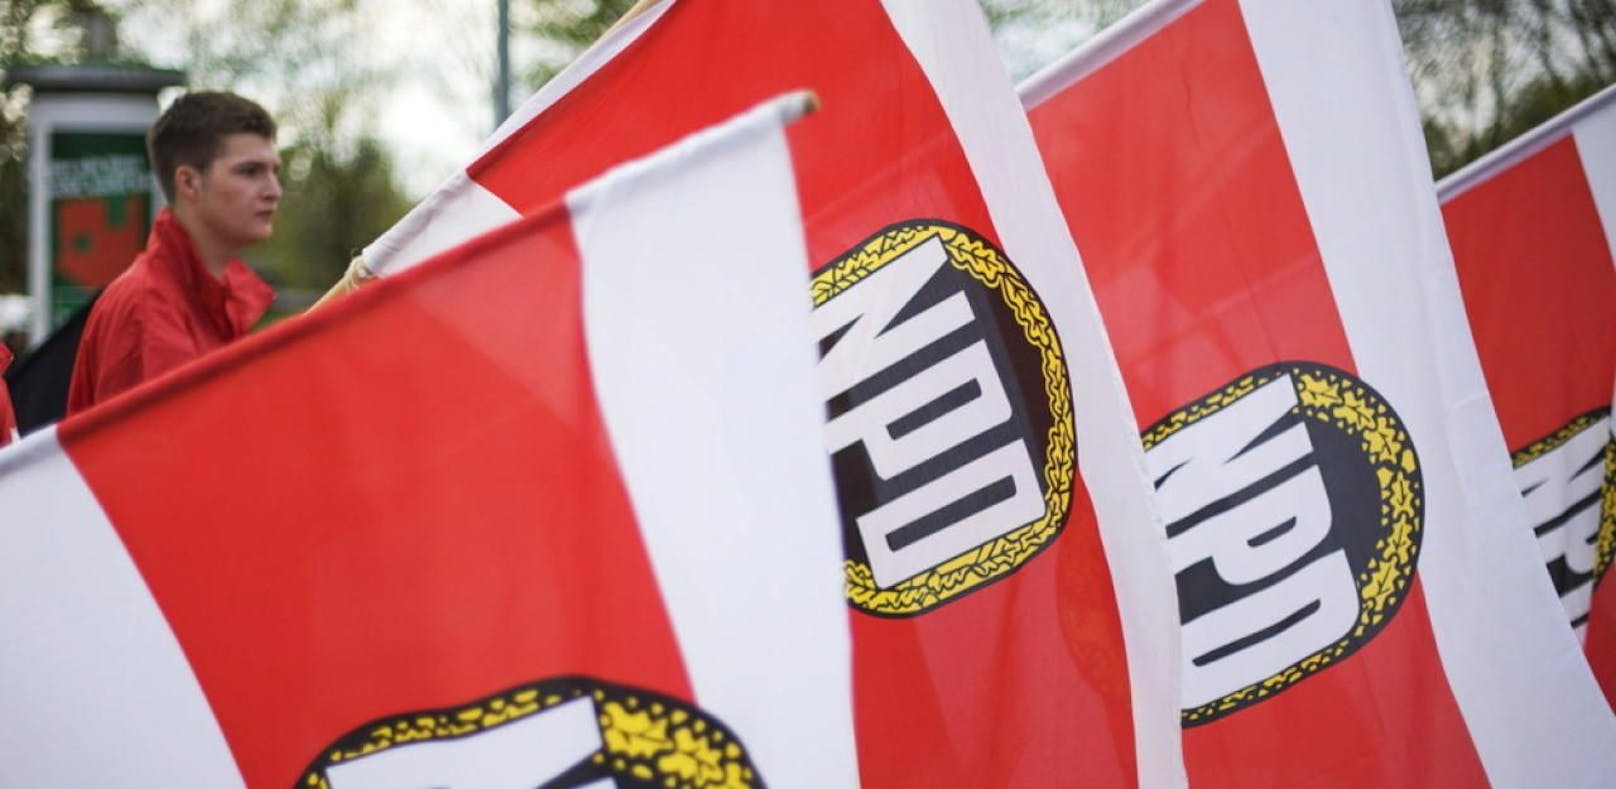 Die NPD bietet Rechtradikalen in Deutschland eine politische Plattform.